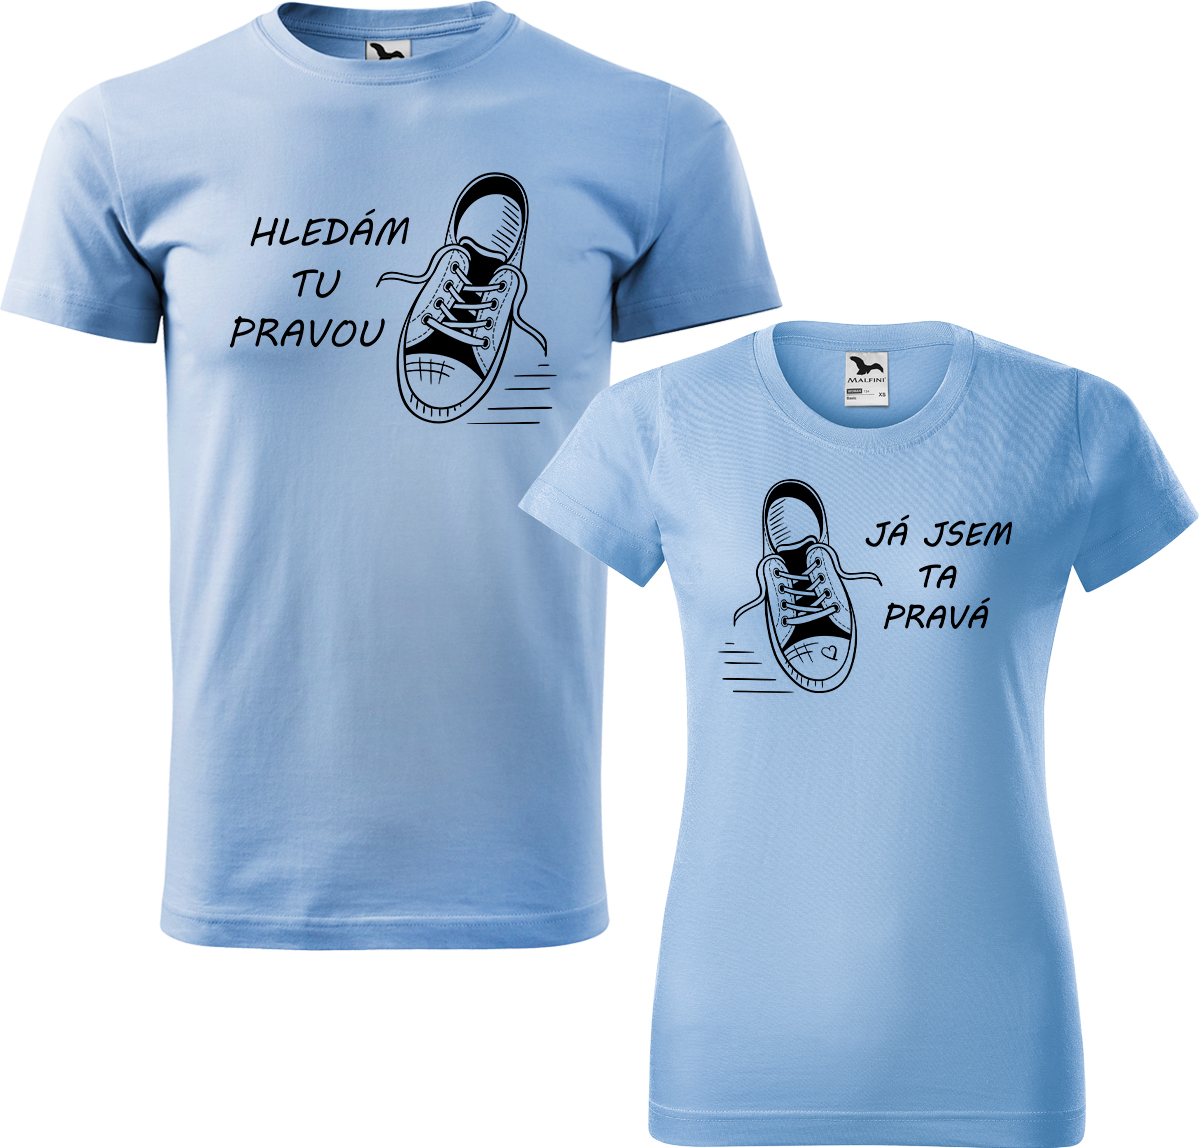 Trička pro páry - Kecky Barva: Nebesky modrá (15), Velikost dámské tričko: S, Velikost pánské tričko: S